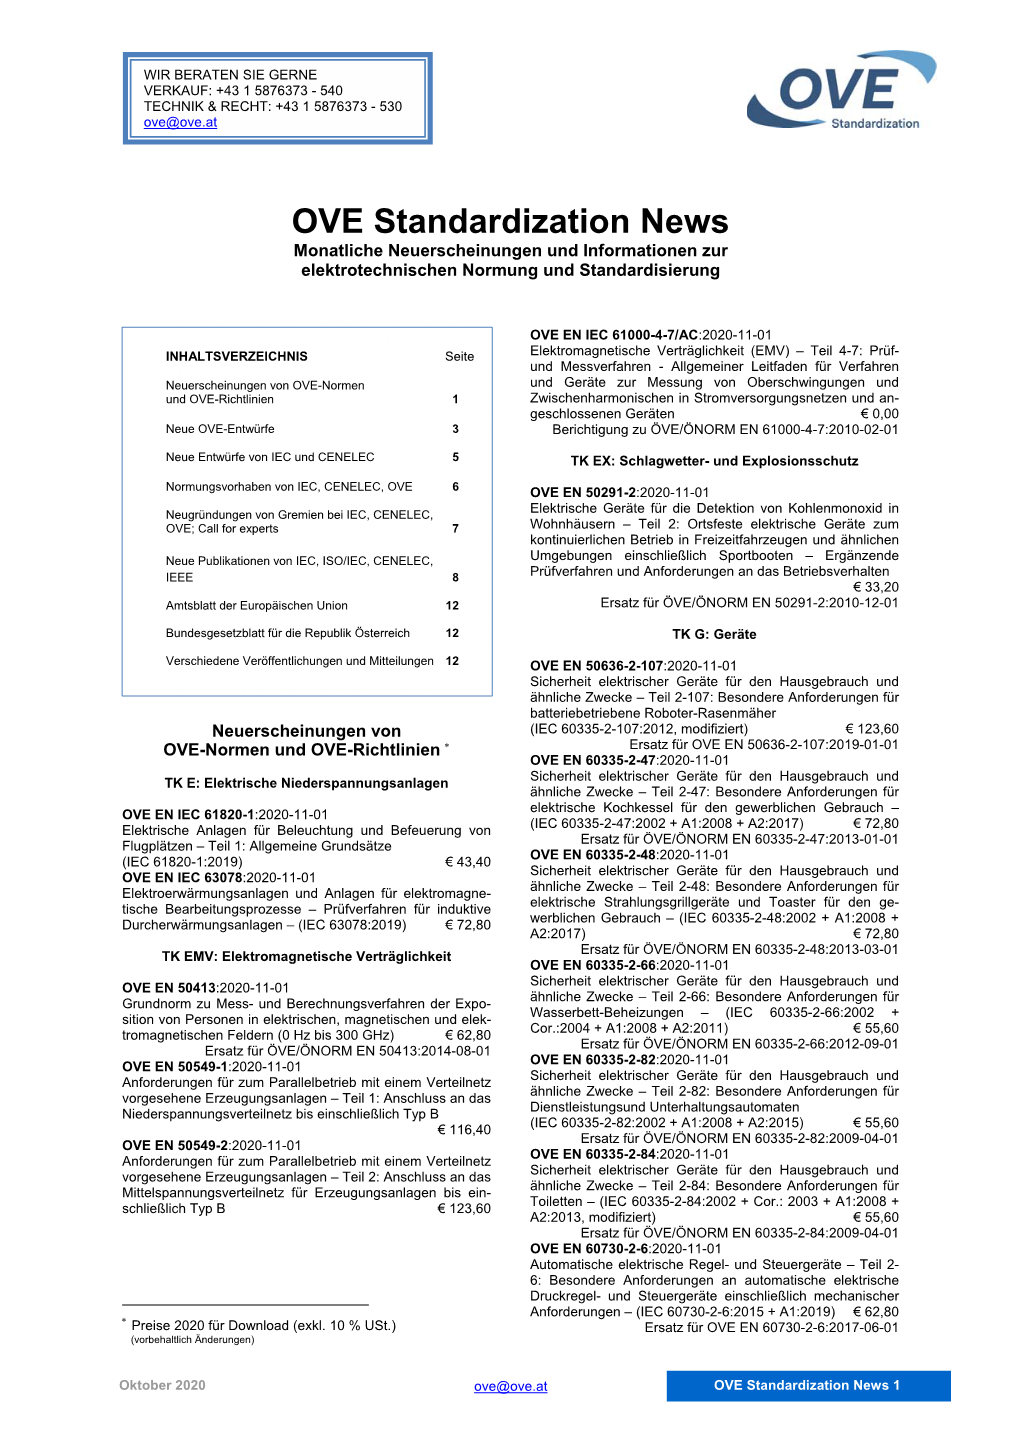 OVE Standardization News Monatliche Neuerscheinungen Und Informationen Zur Elektrotechnischen Normung Und Standardisierung